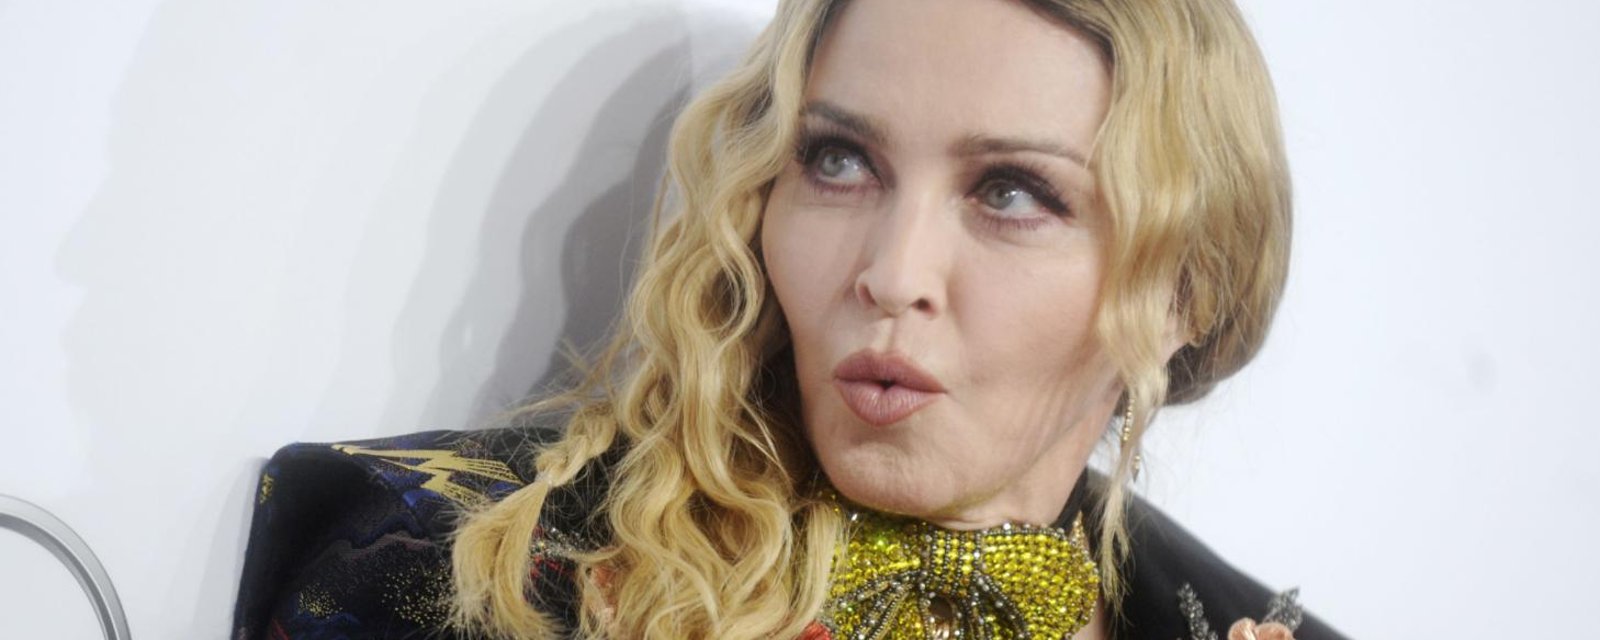 Madonna a un nouveau chum... Il a 25 ans de moins qu'elle et c'est une bombe sexuelle! 